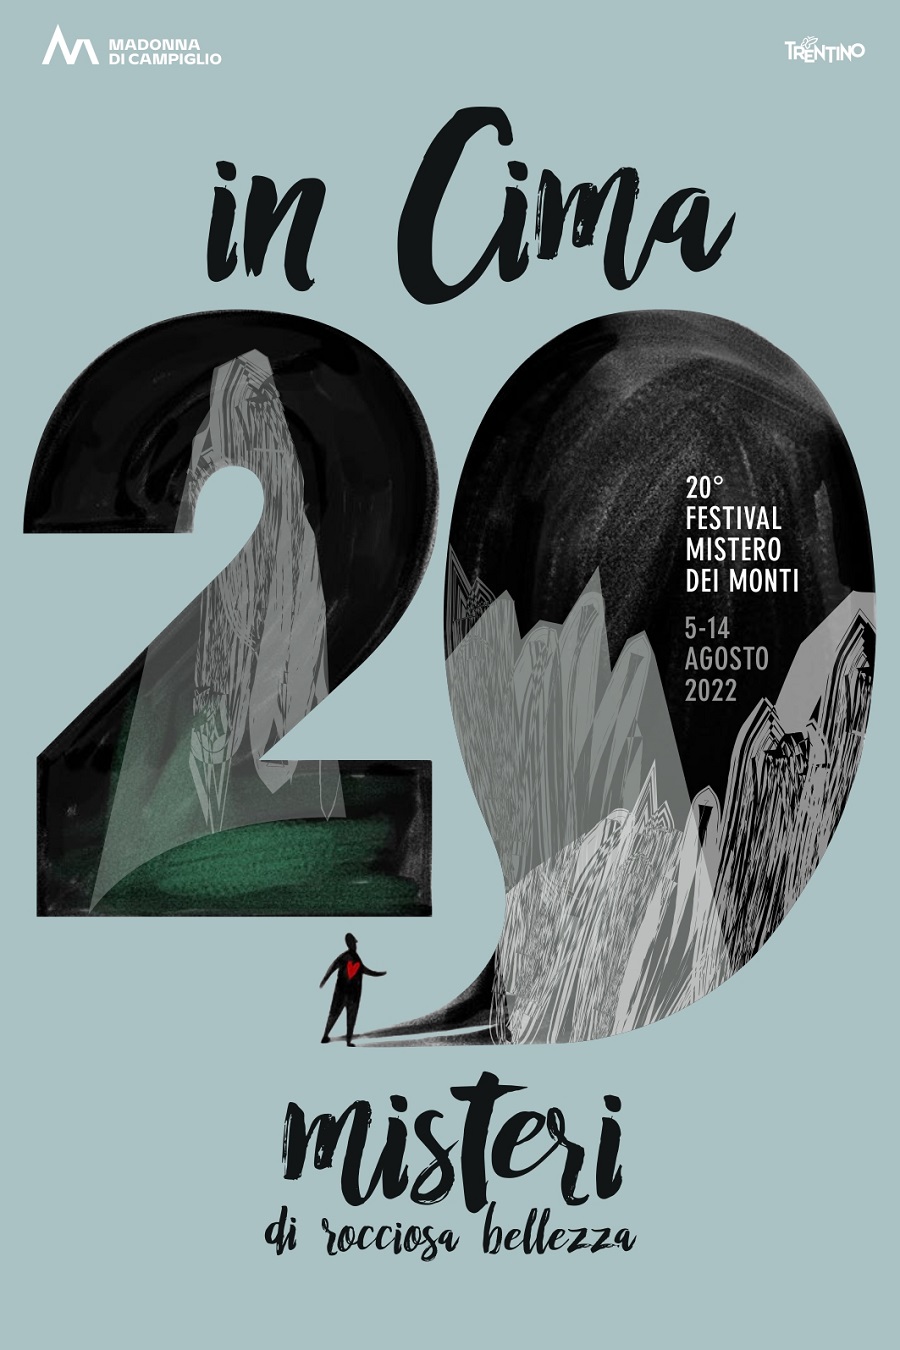 Festival “Mistero dei Monti”, 5-14 Agosto 2022, Madonna di Campiglio